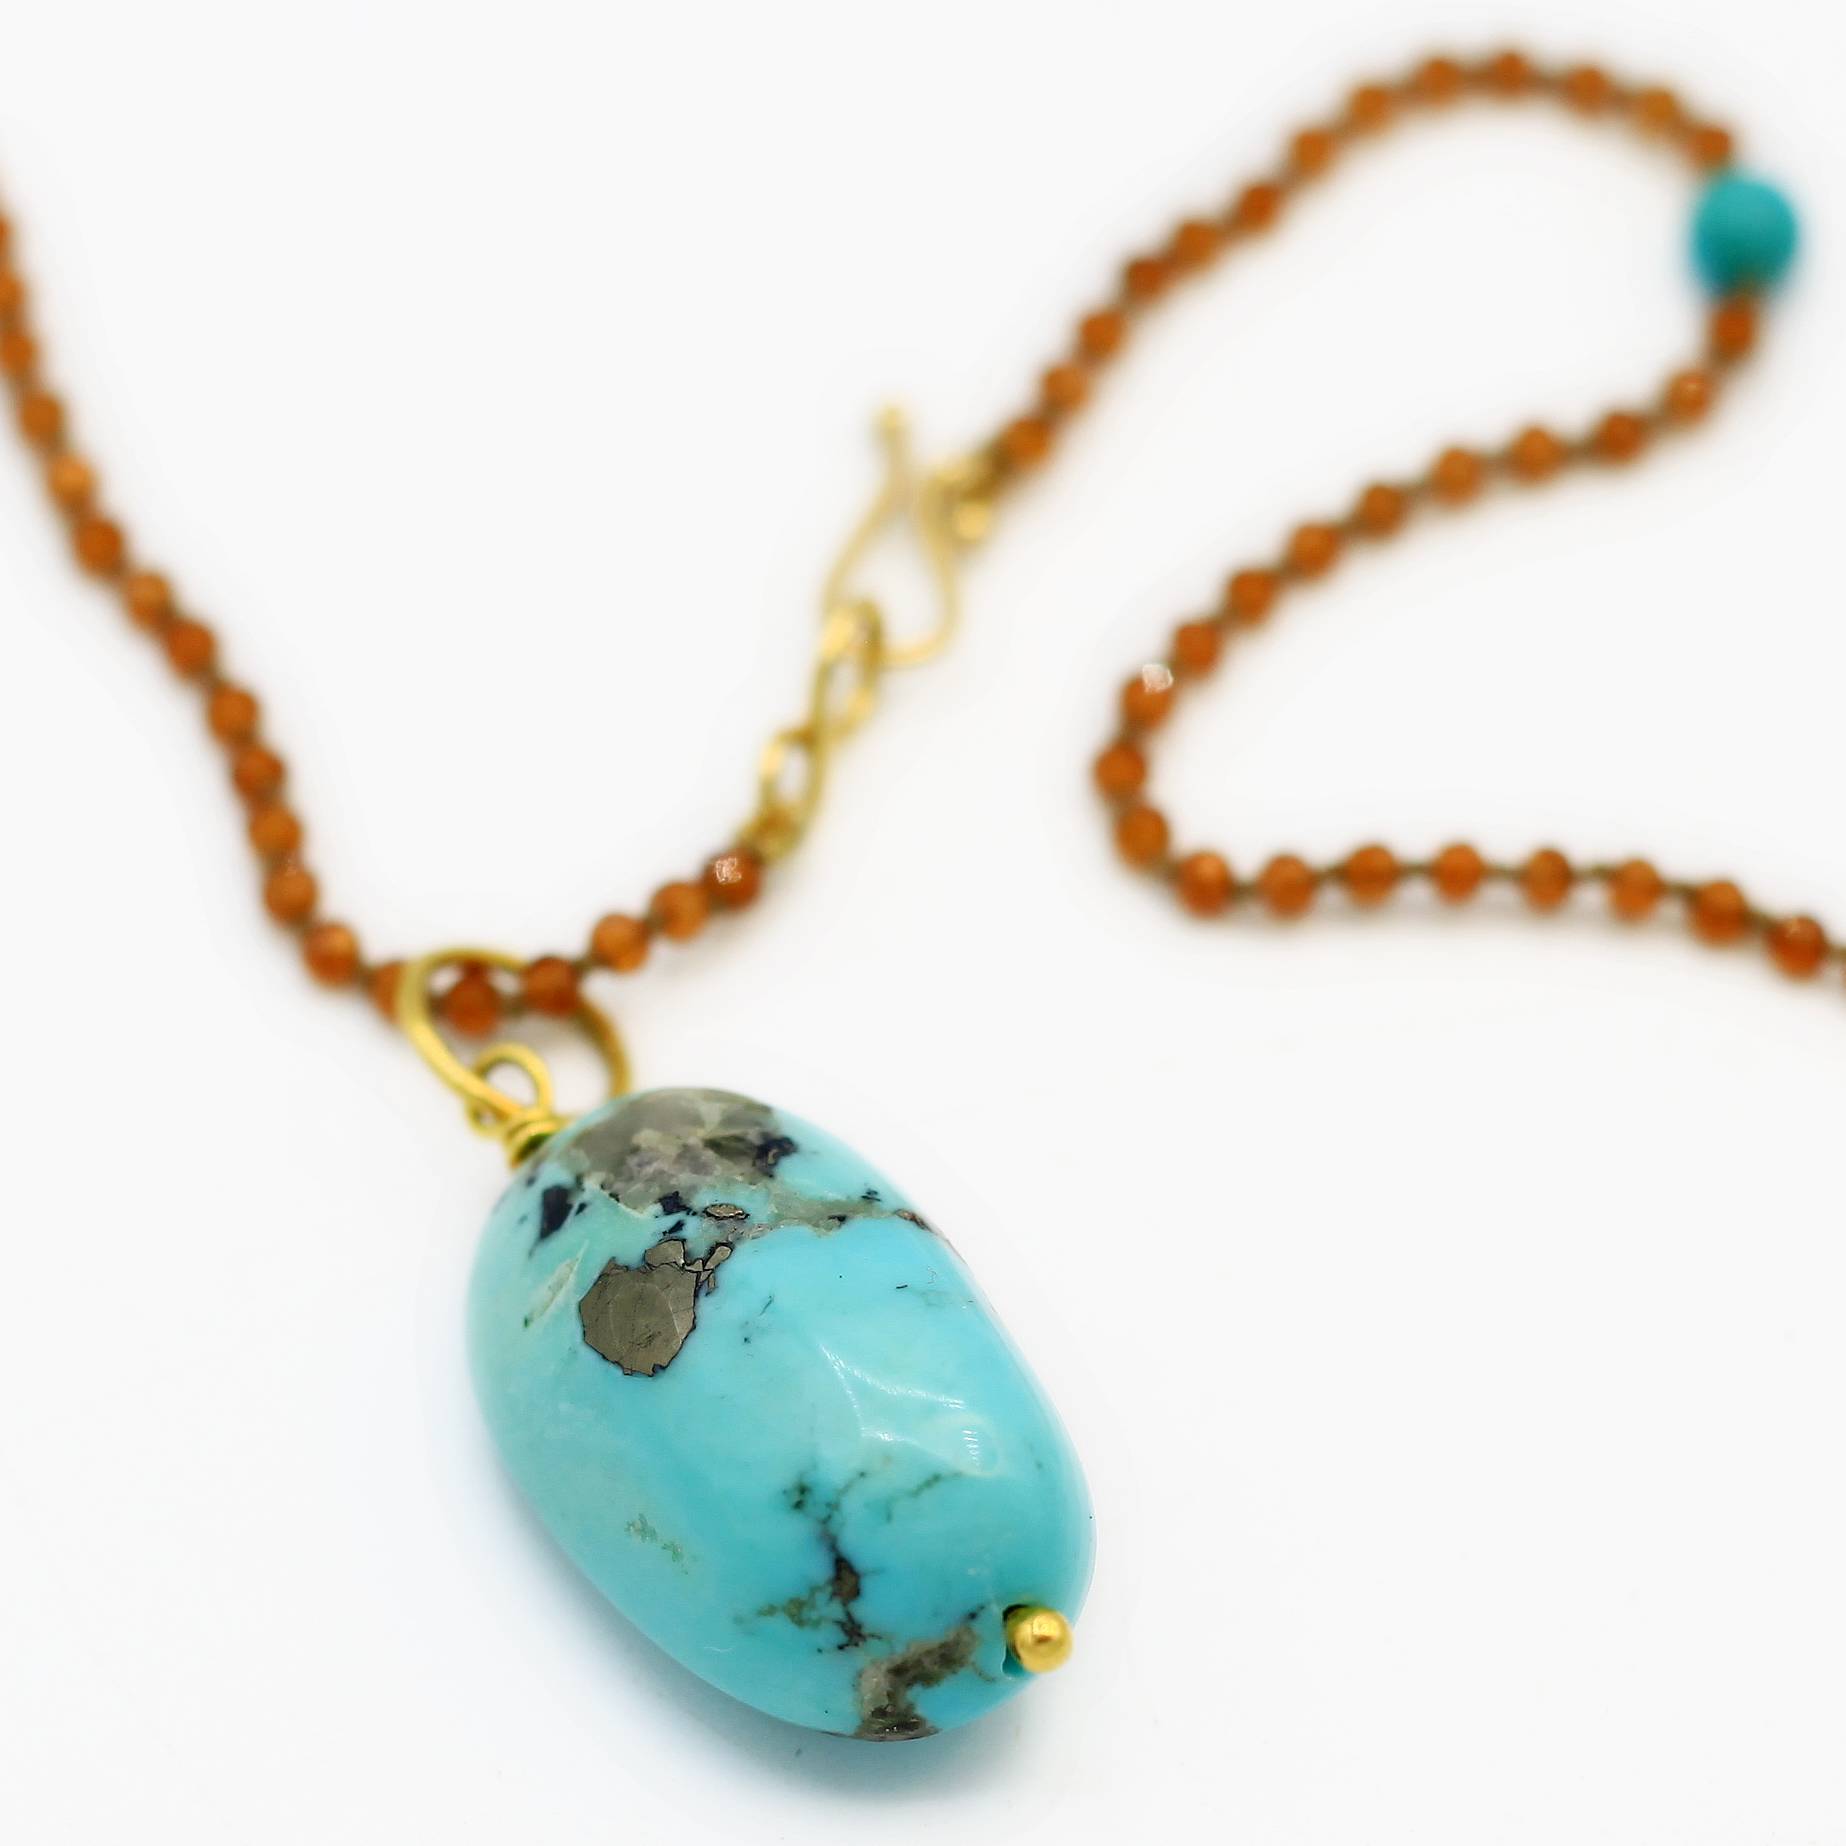 Lena Skadegard Jewels | Turquoise + Hessonite Garnet 9k Gold Pendant Necklace | Firecracker